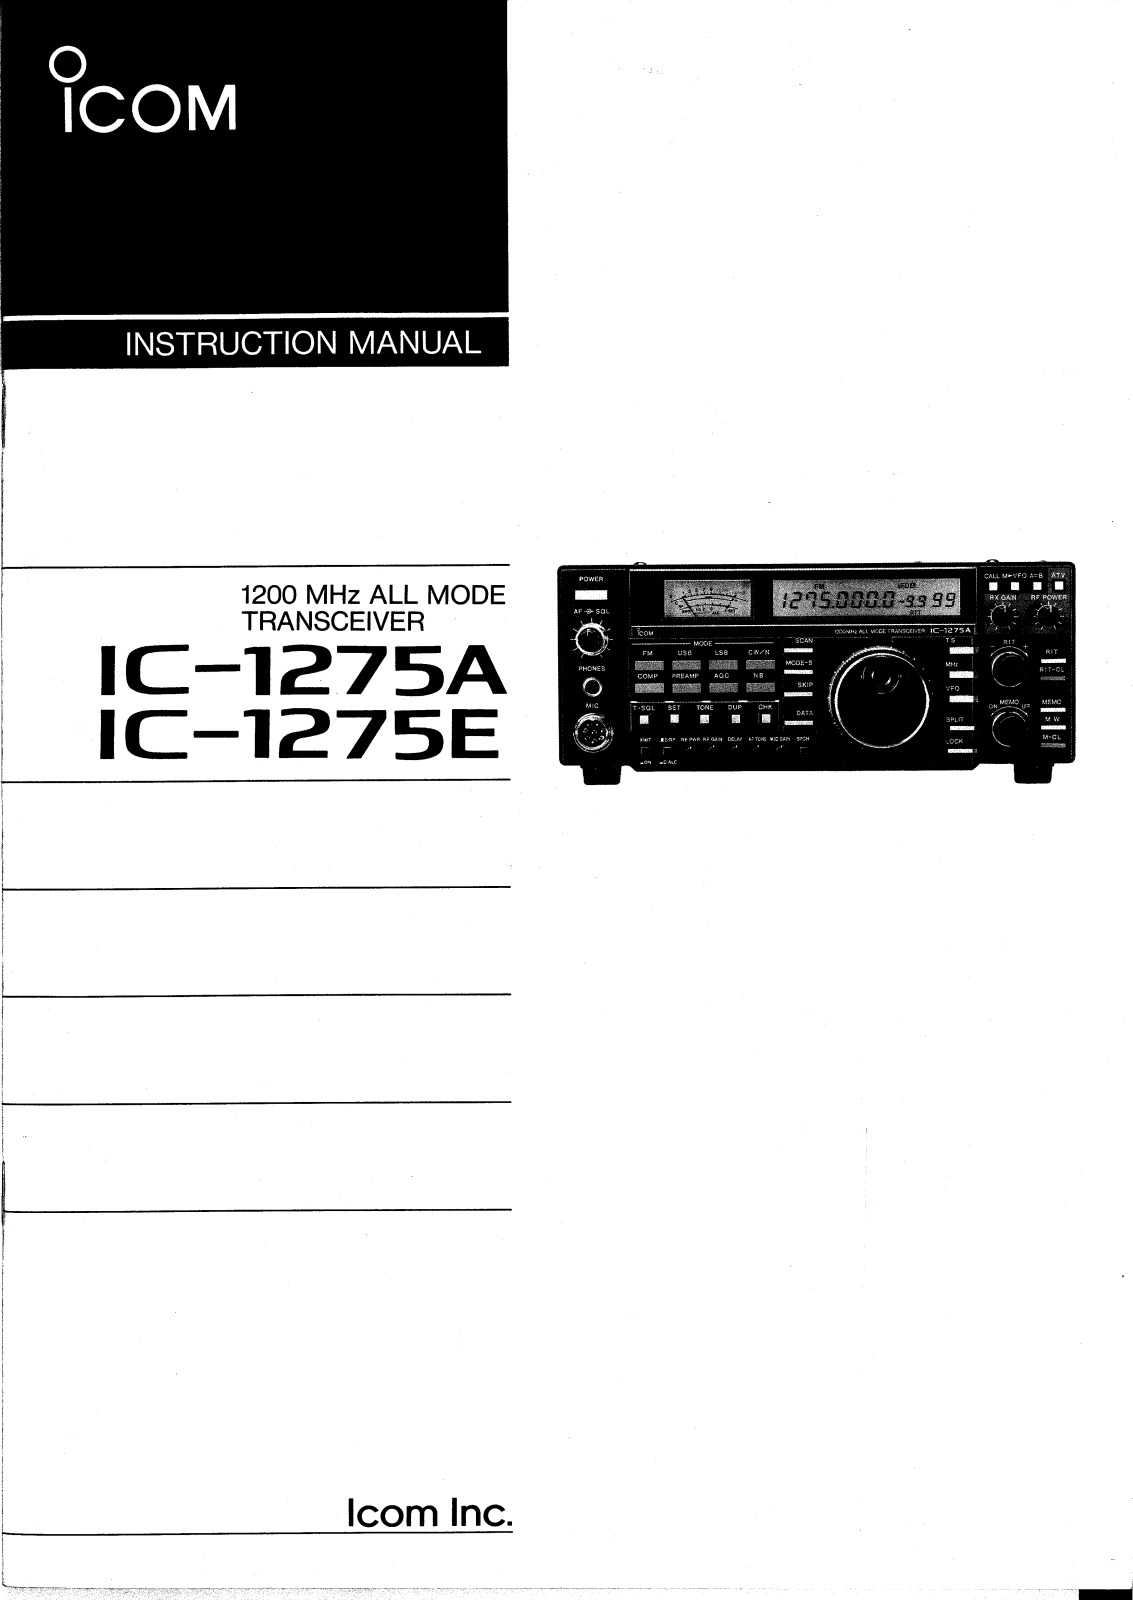 ICOM IC-1275A, IC-1275E User Manual